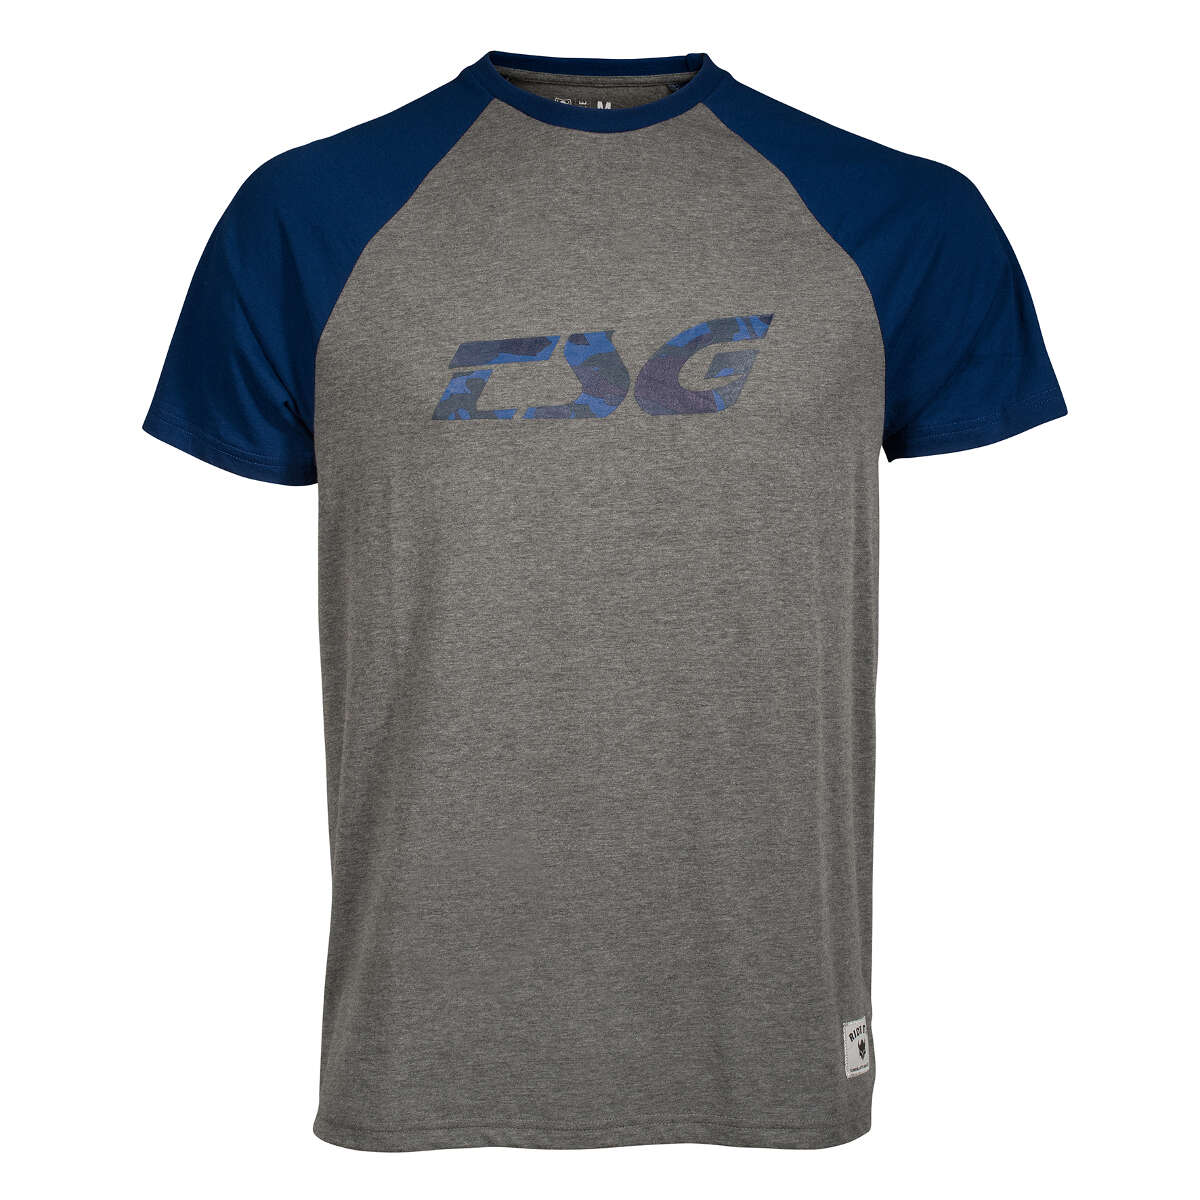 TSG T-Shirt Raglan Heather Grey/Blue